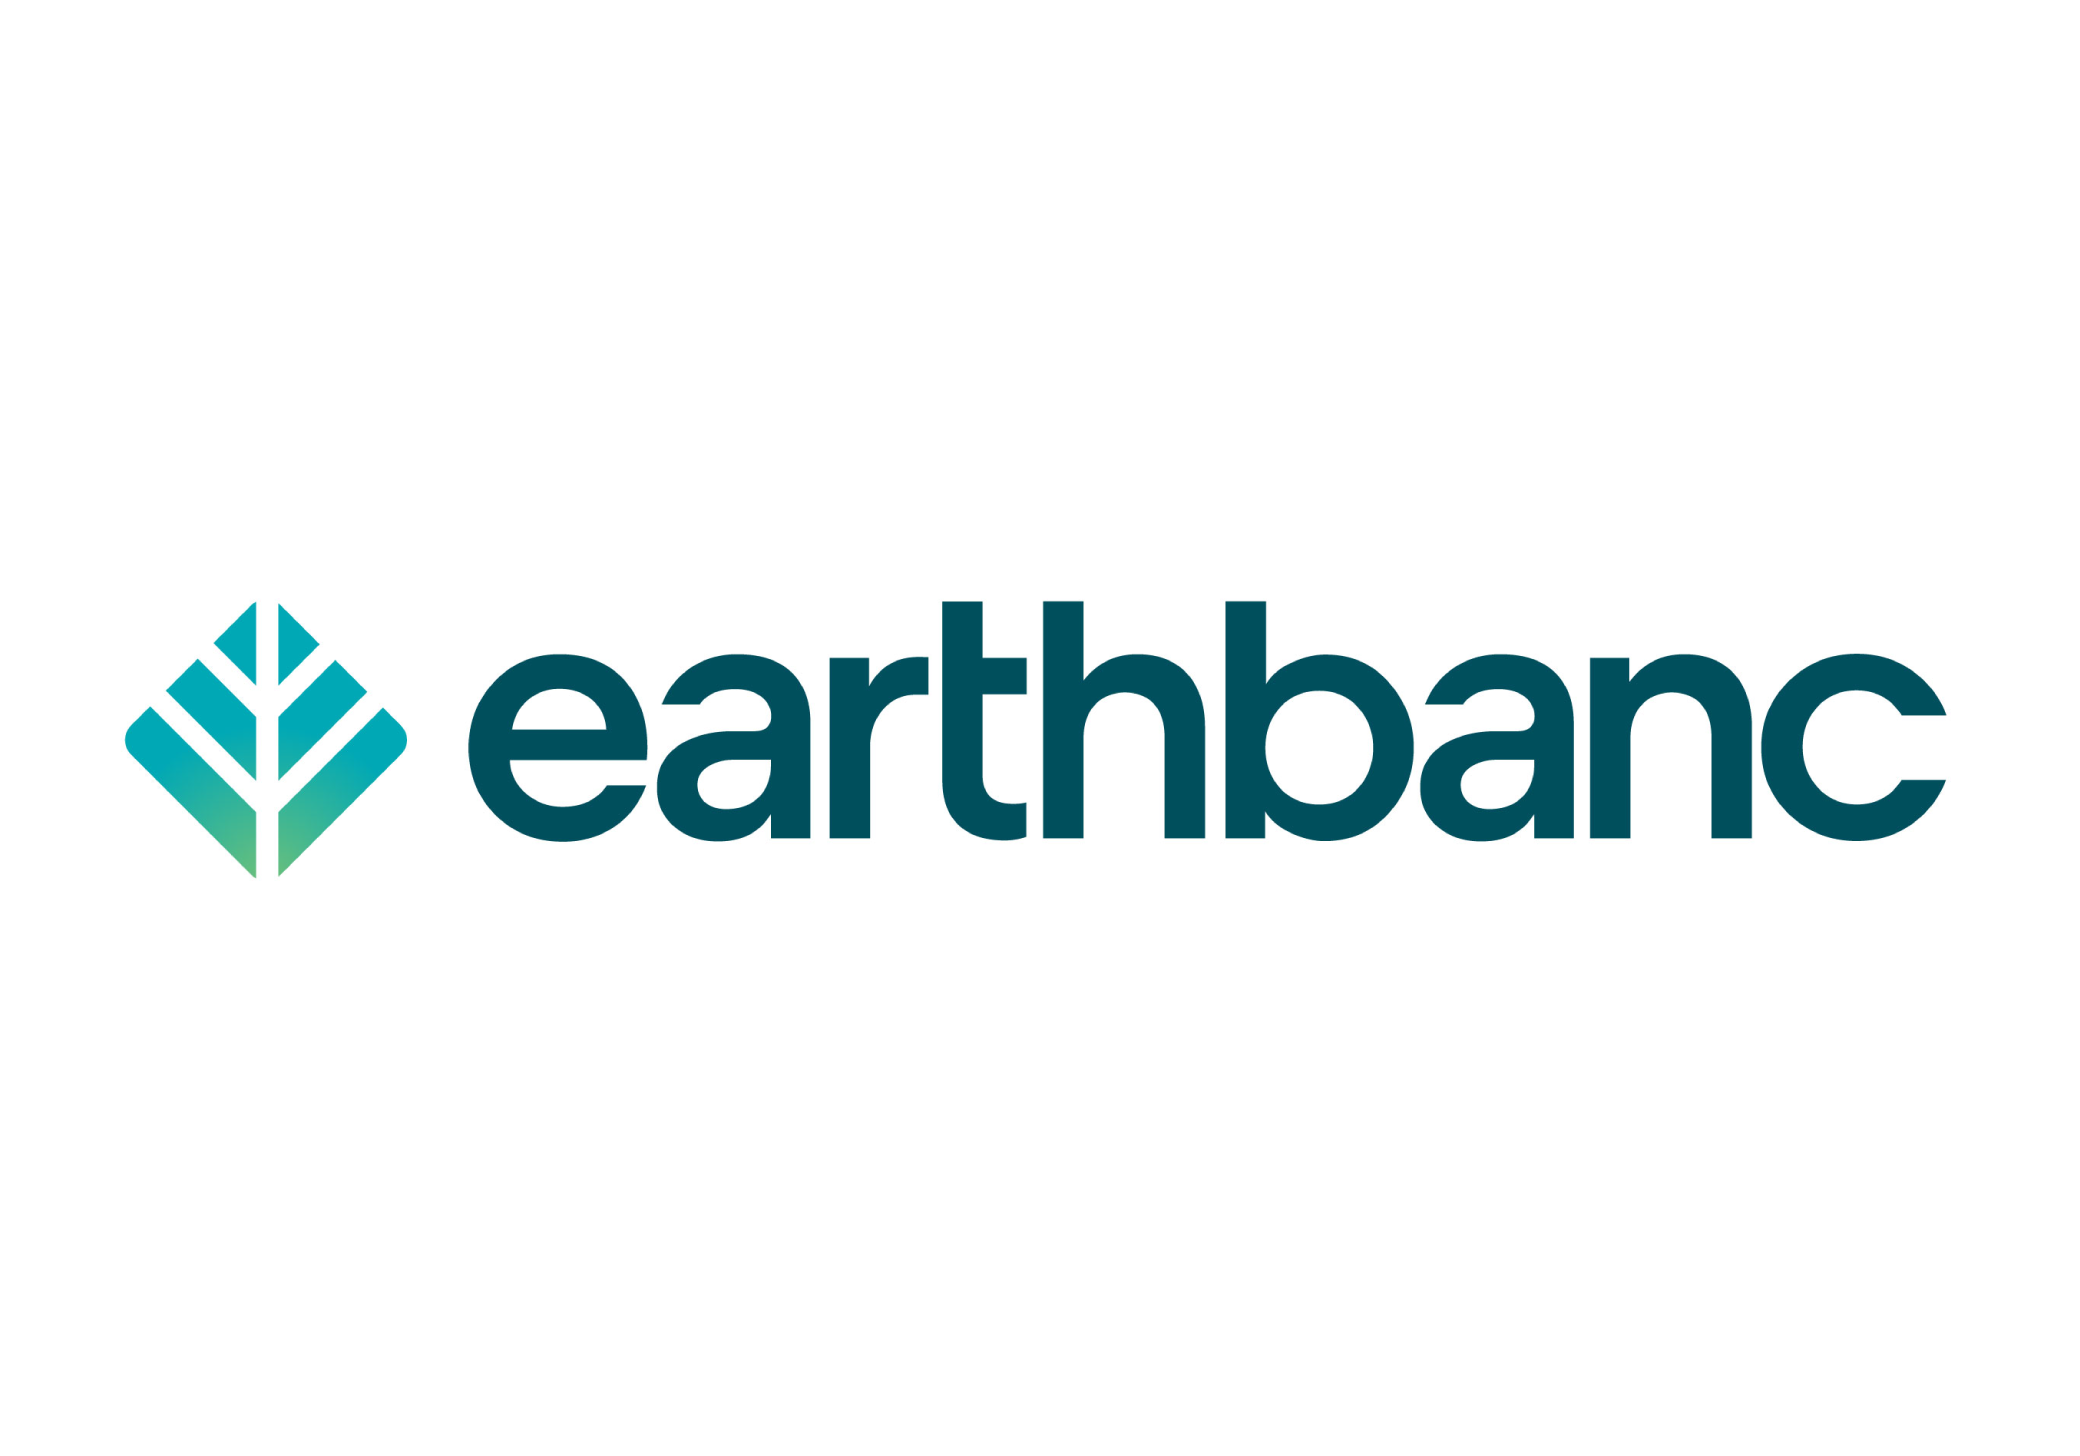 Earthbanc